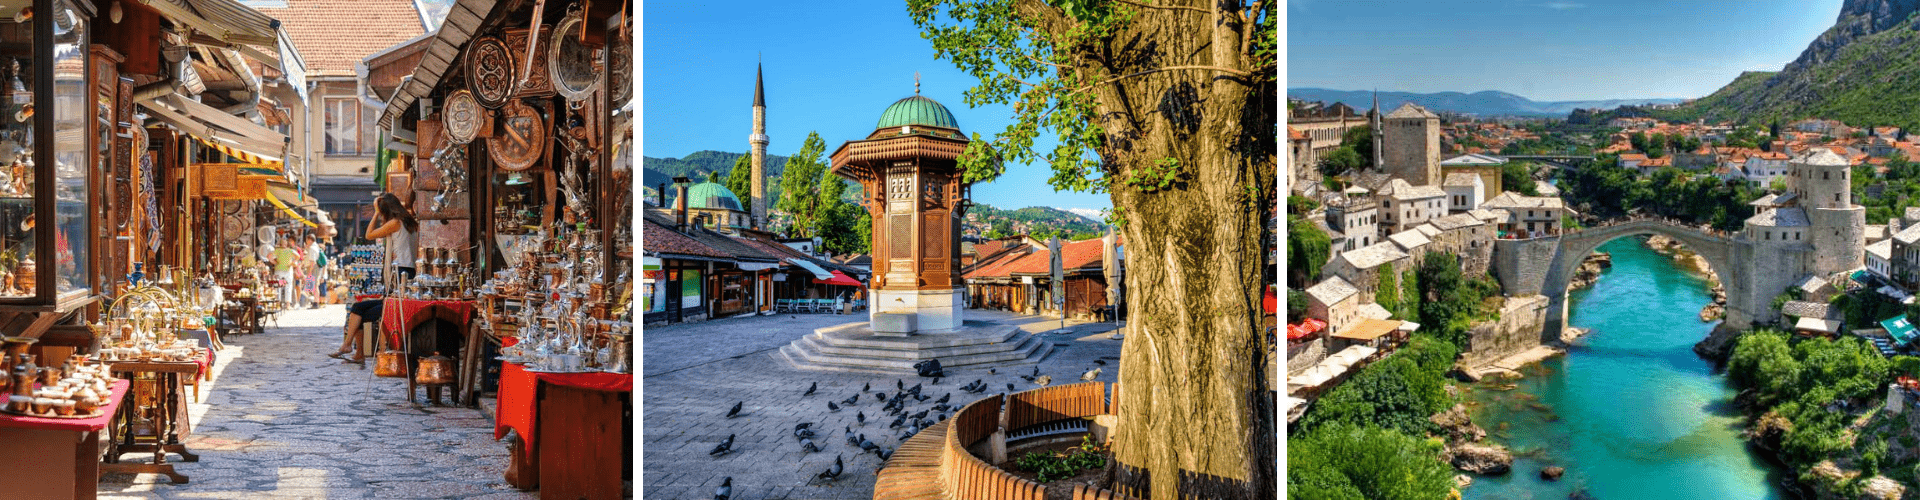 Sarajevo sa Posetom mostaru - AquaTravel.rs